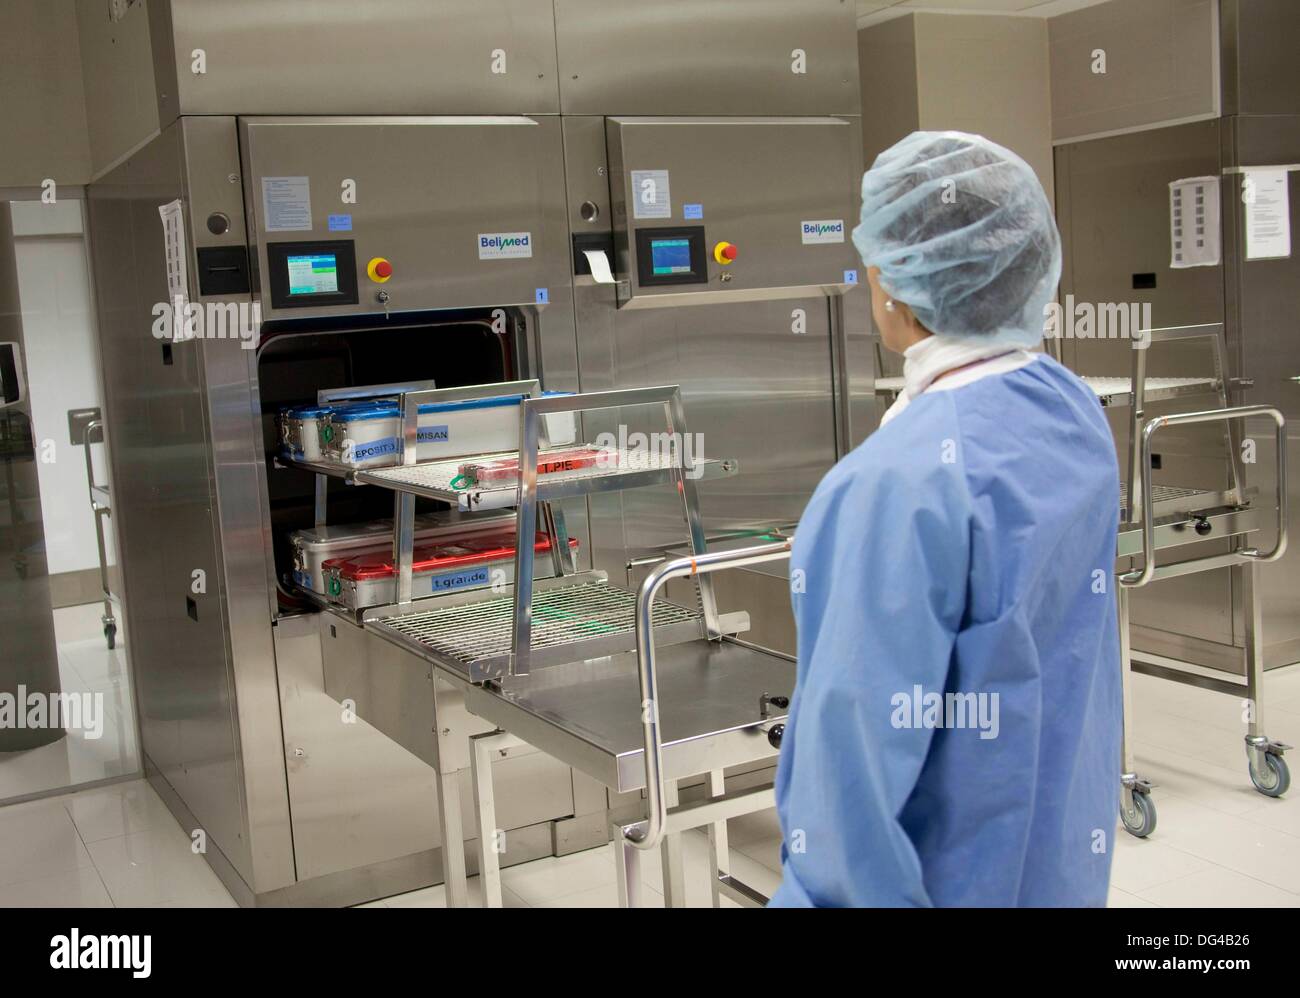 Reinigung von chirurgischen Instrumenten, Sterilisation. Krankenhaus  Policlinica Gipuzkoa, San Sebastian-Donostia, Baskenland, Spanien  Stockfotografie - Alamy